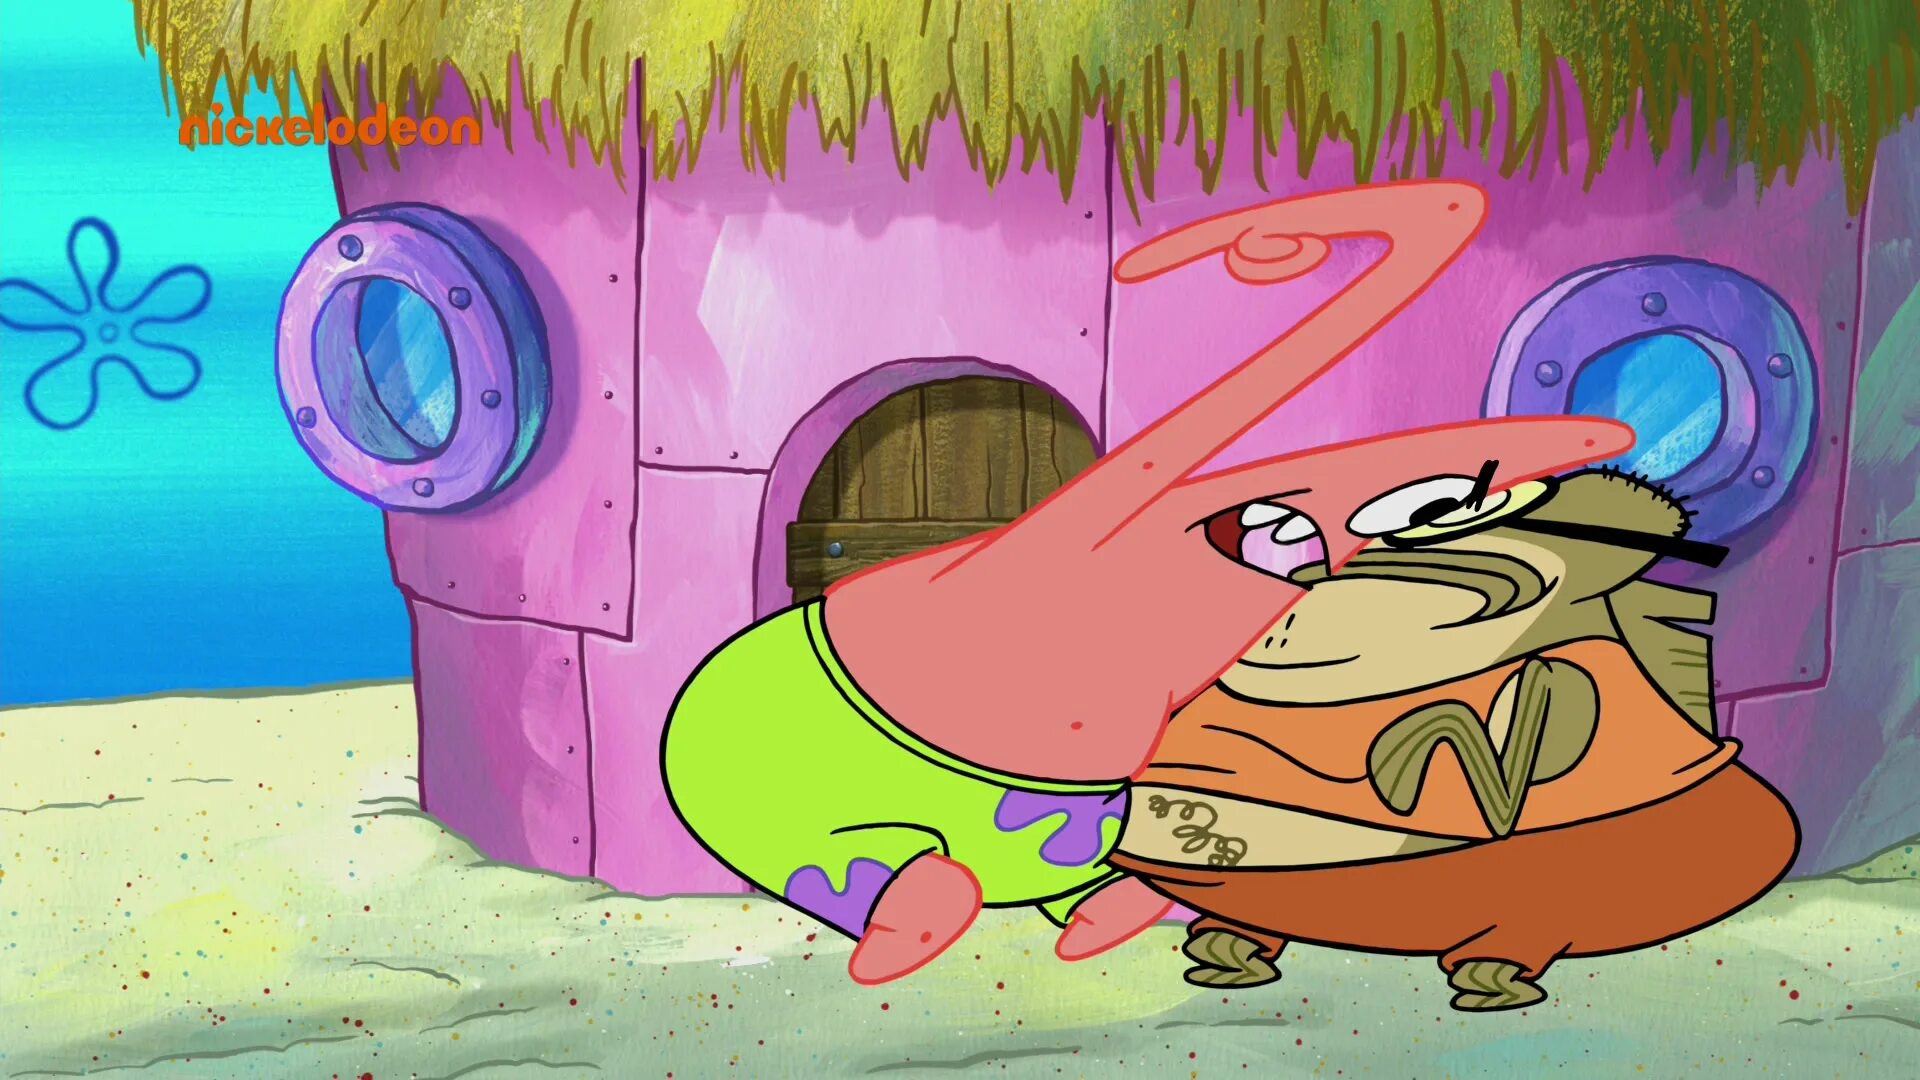 Spongebob big. Патрик злится. Спанч Боб бабл бас. Губка Боб квадратные штаны Баббл басс.